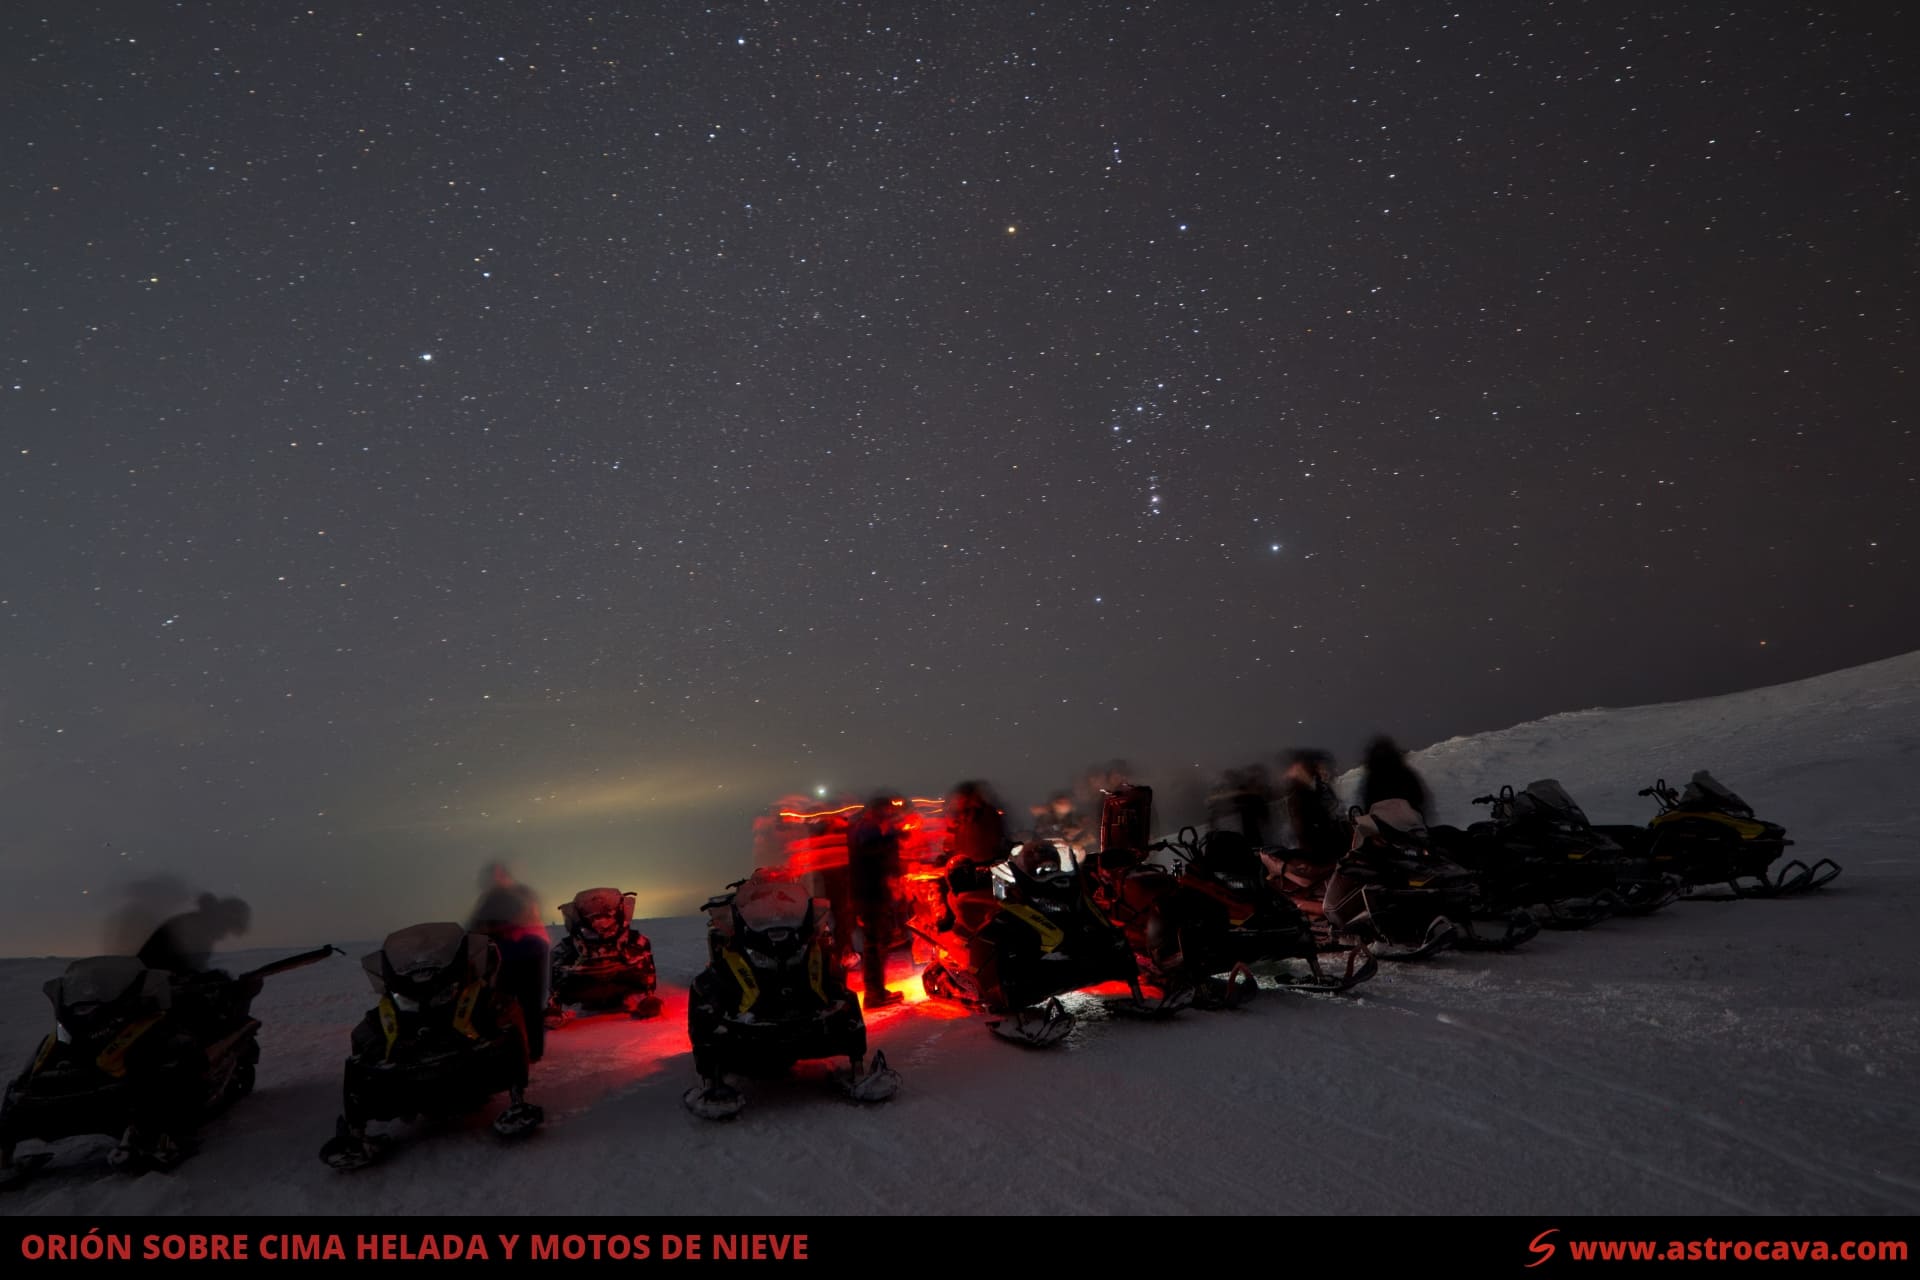 El cielo de invierno con la constelación de Orión sobre una cima helada y un grupo de motos de nieve.